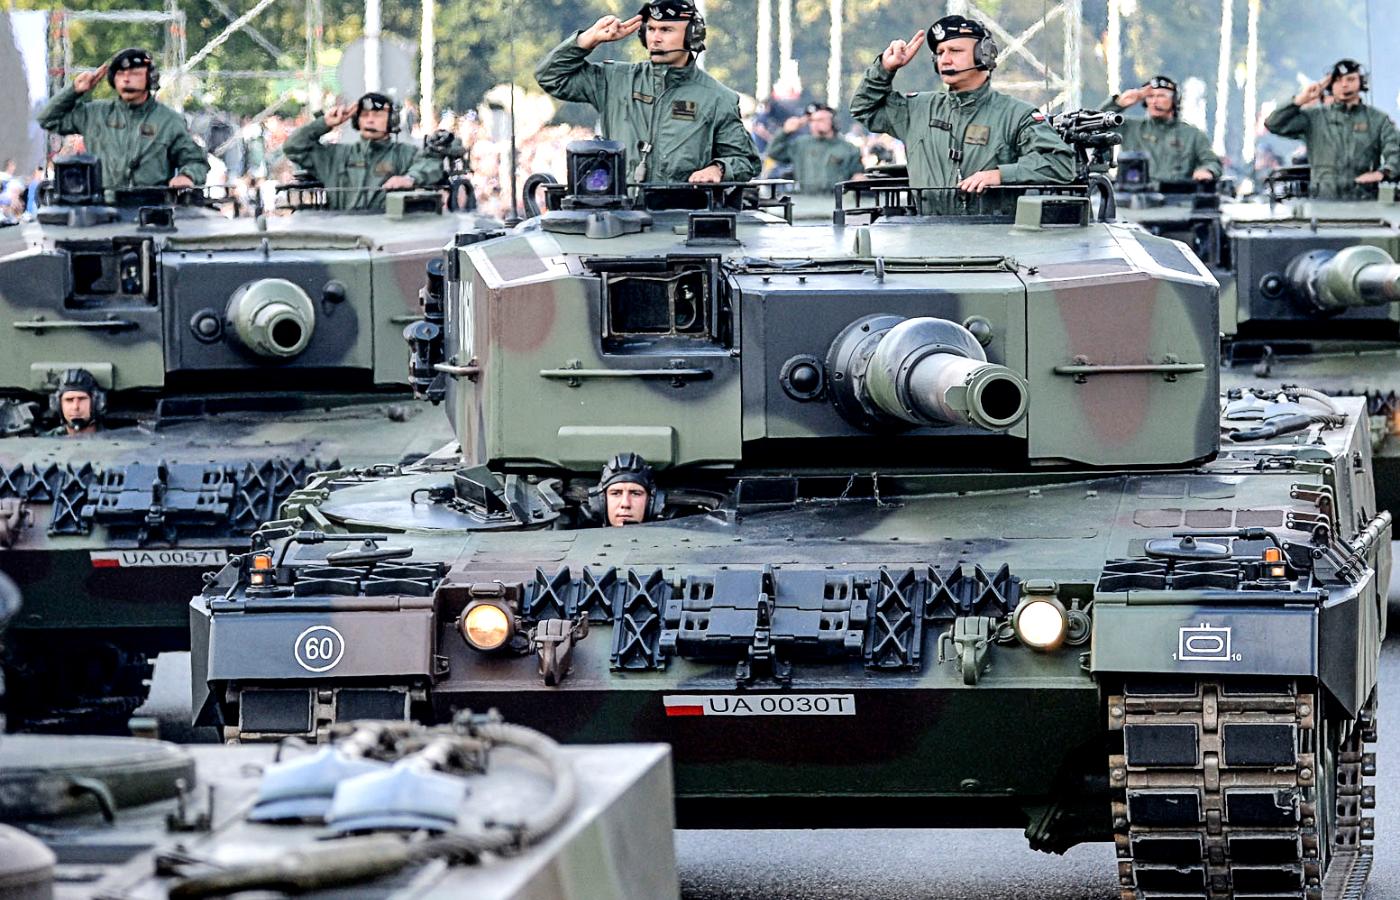 W 2017 r. bataliony czołgów Leopard zostały przeniesione z zachodu na wschodnią linię Wisły. Na fot. Leopard 2A4.